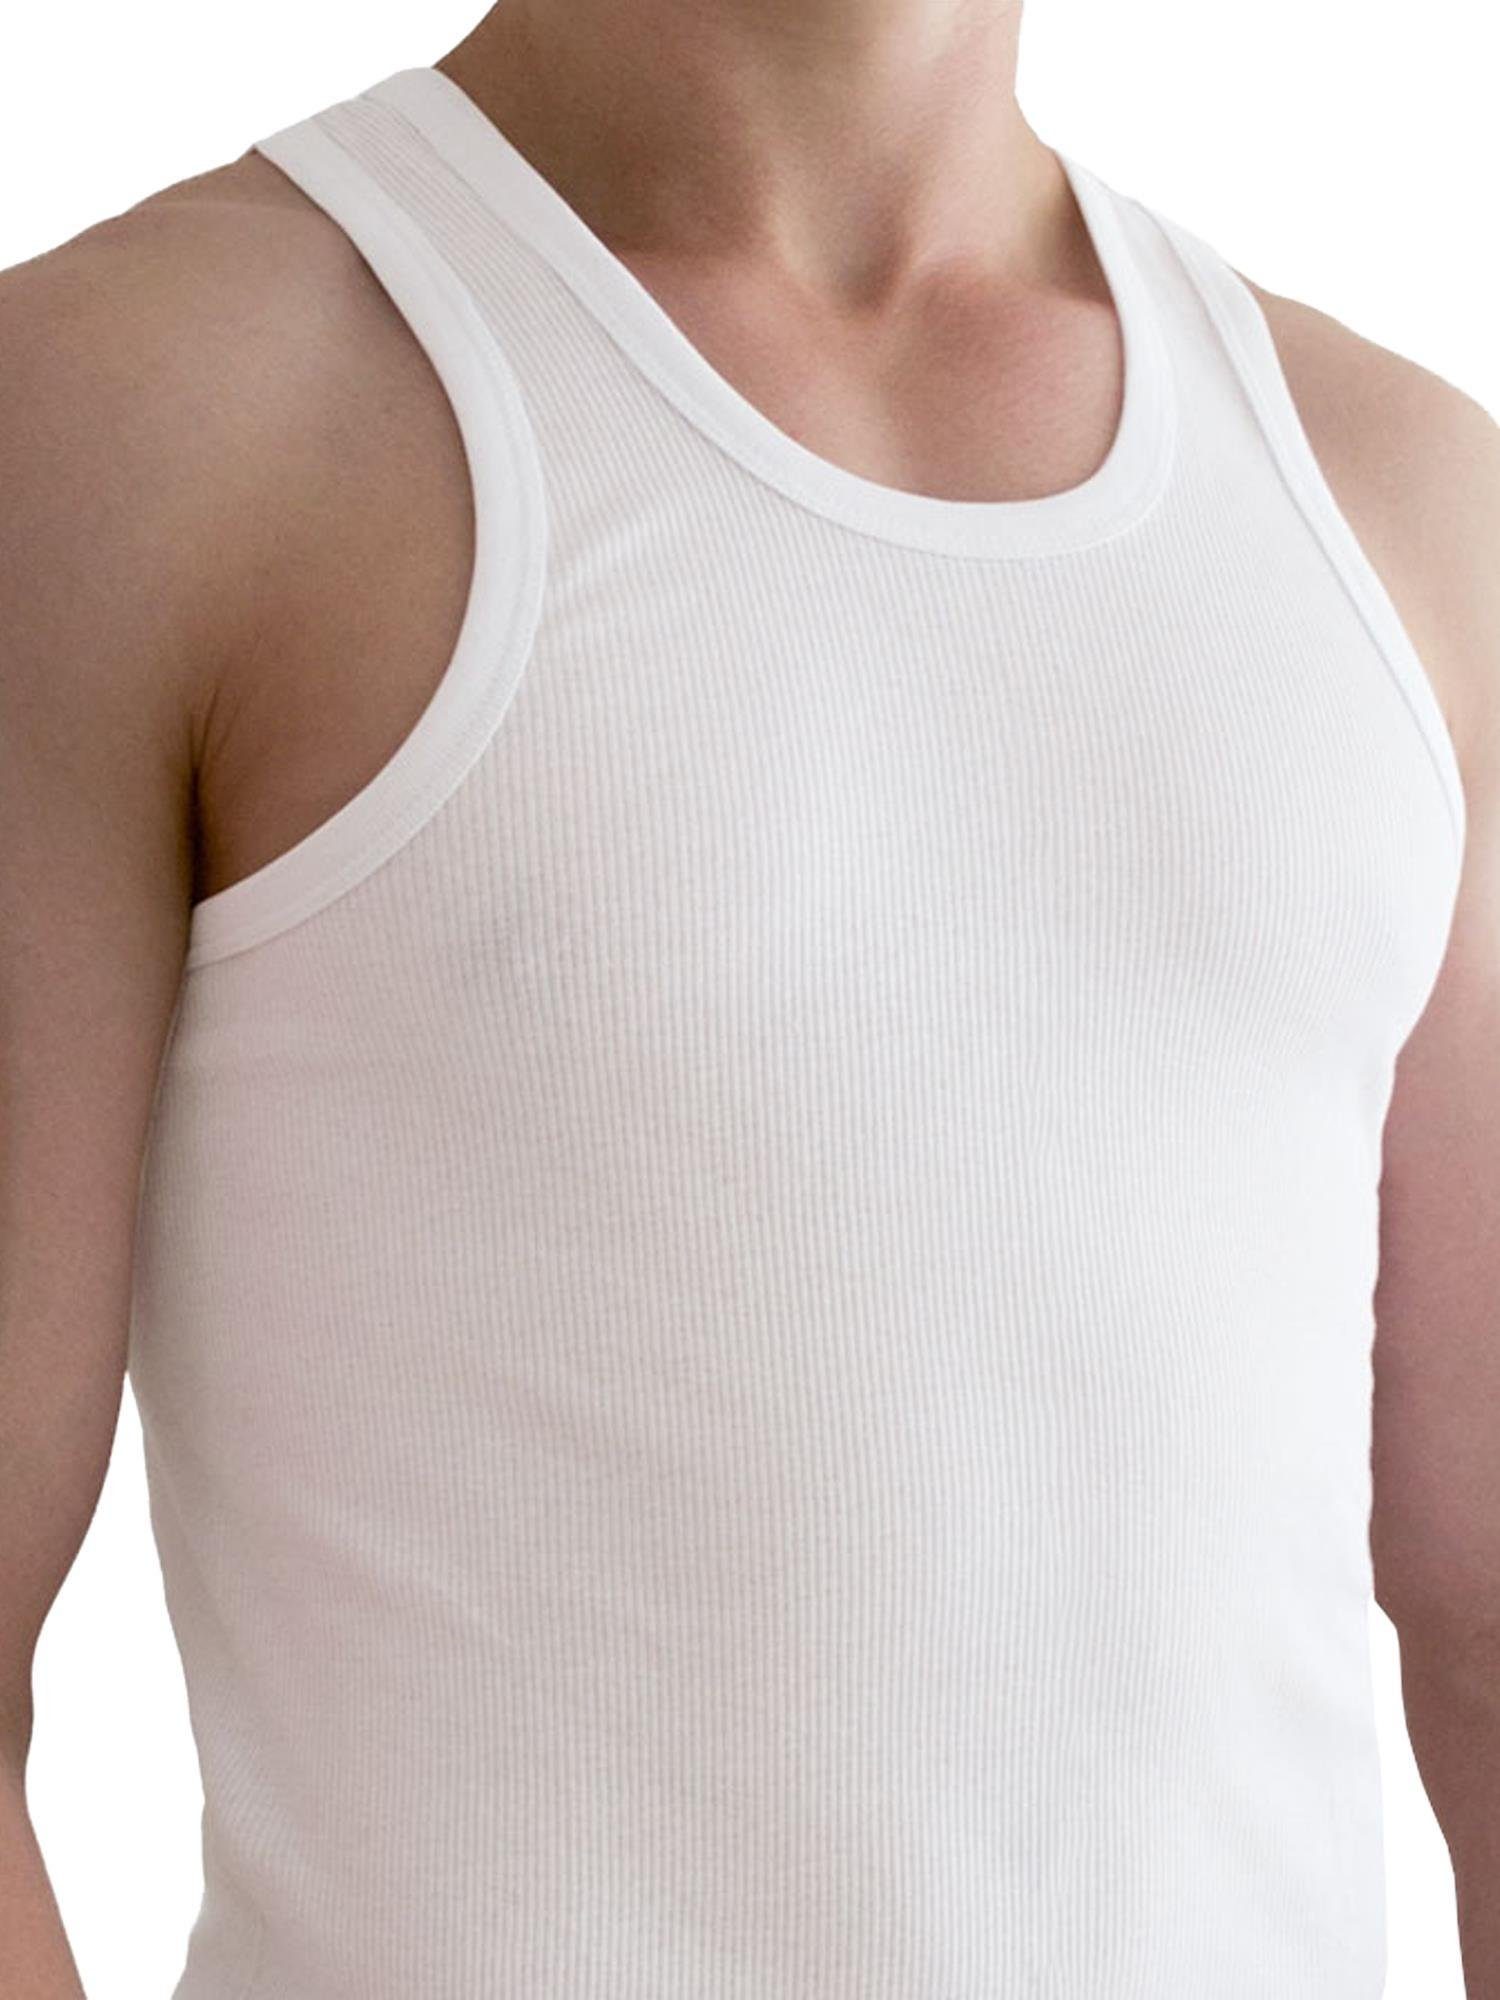 Doppelripp Unterhemd 5 Doppelrippung mit normani Herren-Unterhemd Stück